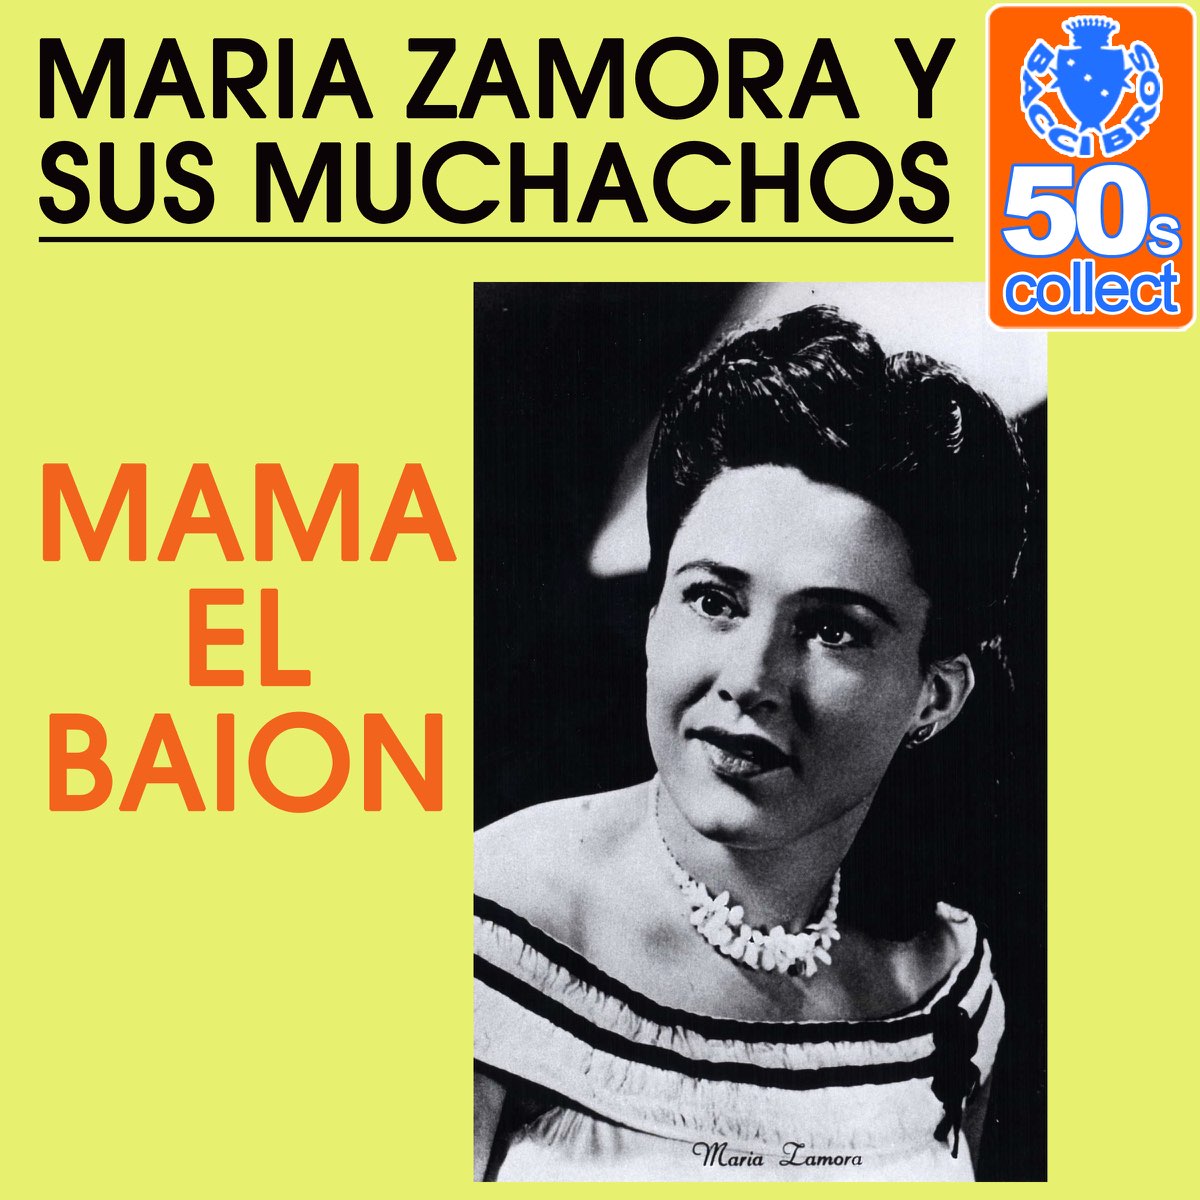 Maria zamora sus muchachos. Mama el Baion (Remastered) от Maria Zamora y sus muchachos. El Baion песня.